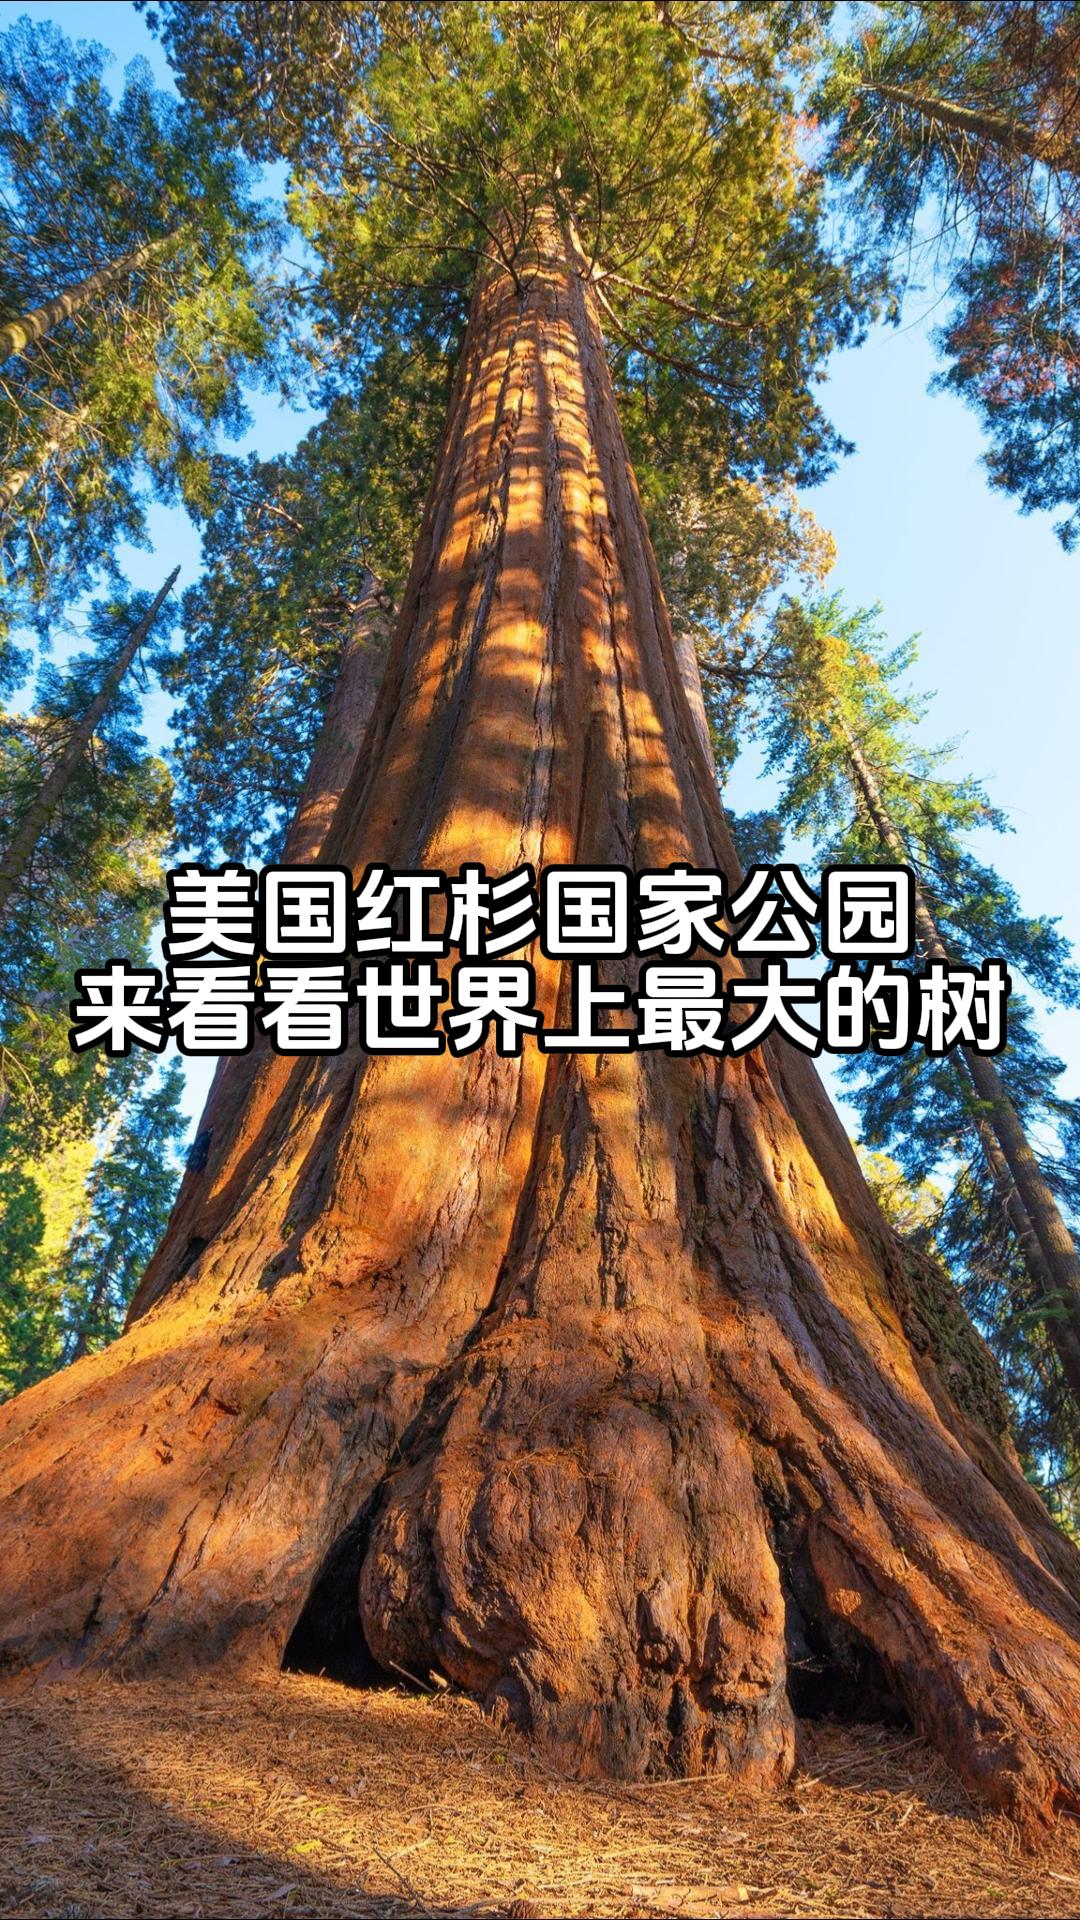 美国红杉国家公园 来看看世界上最大的树吧